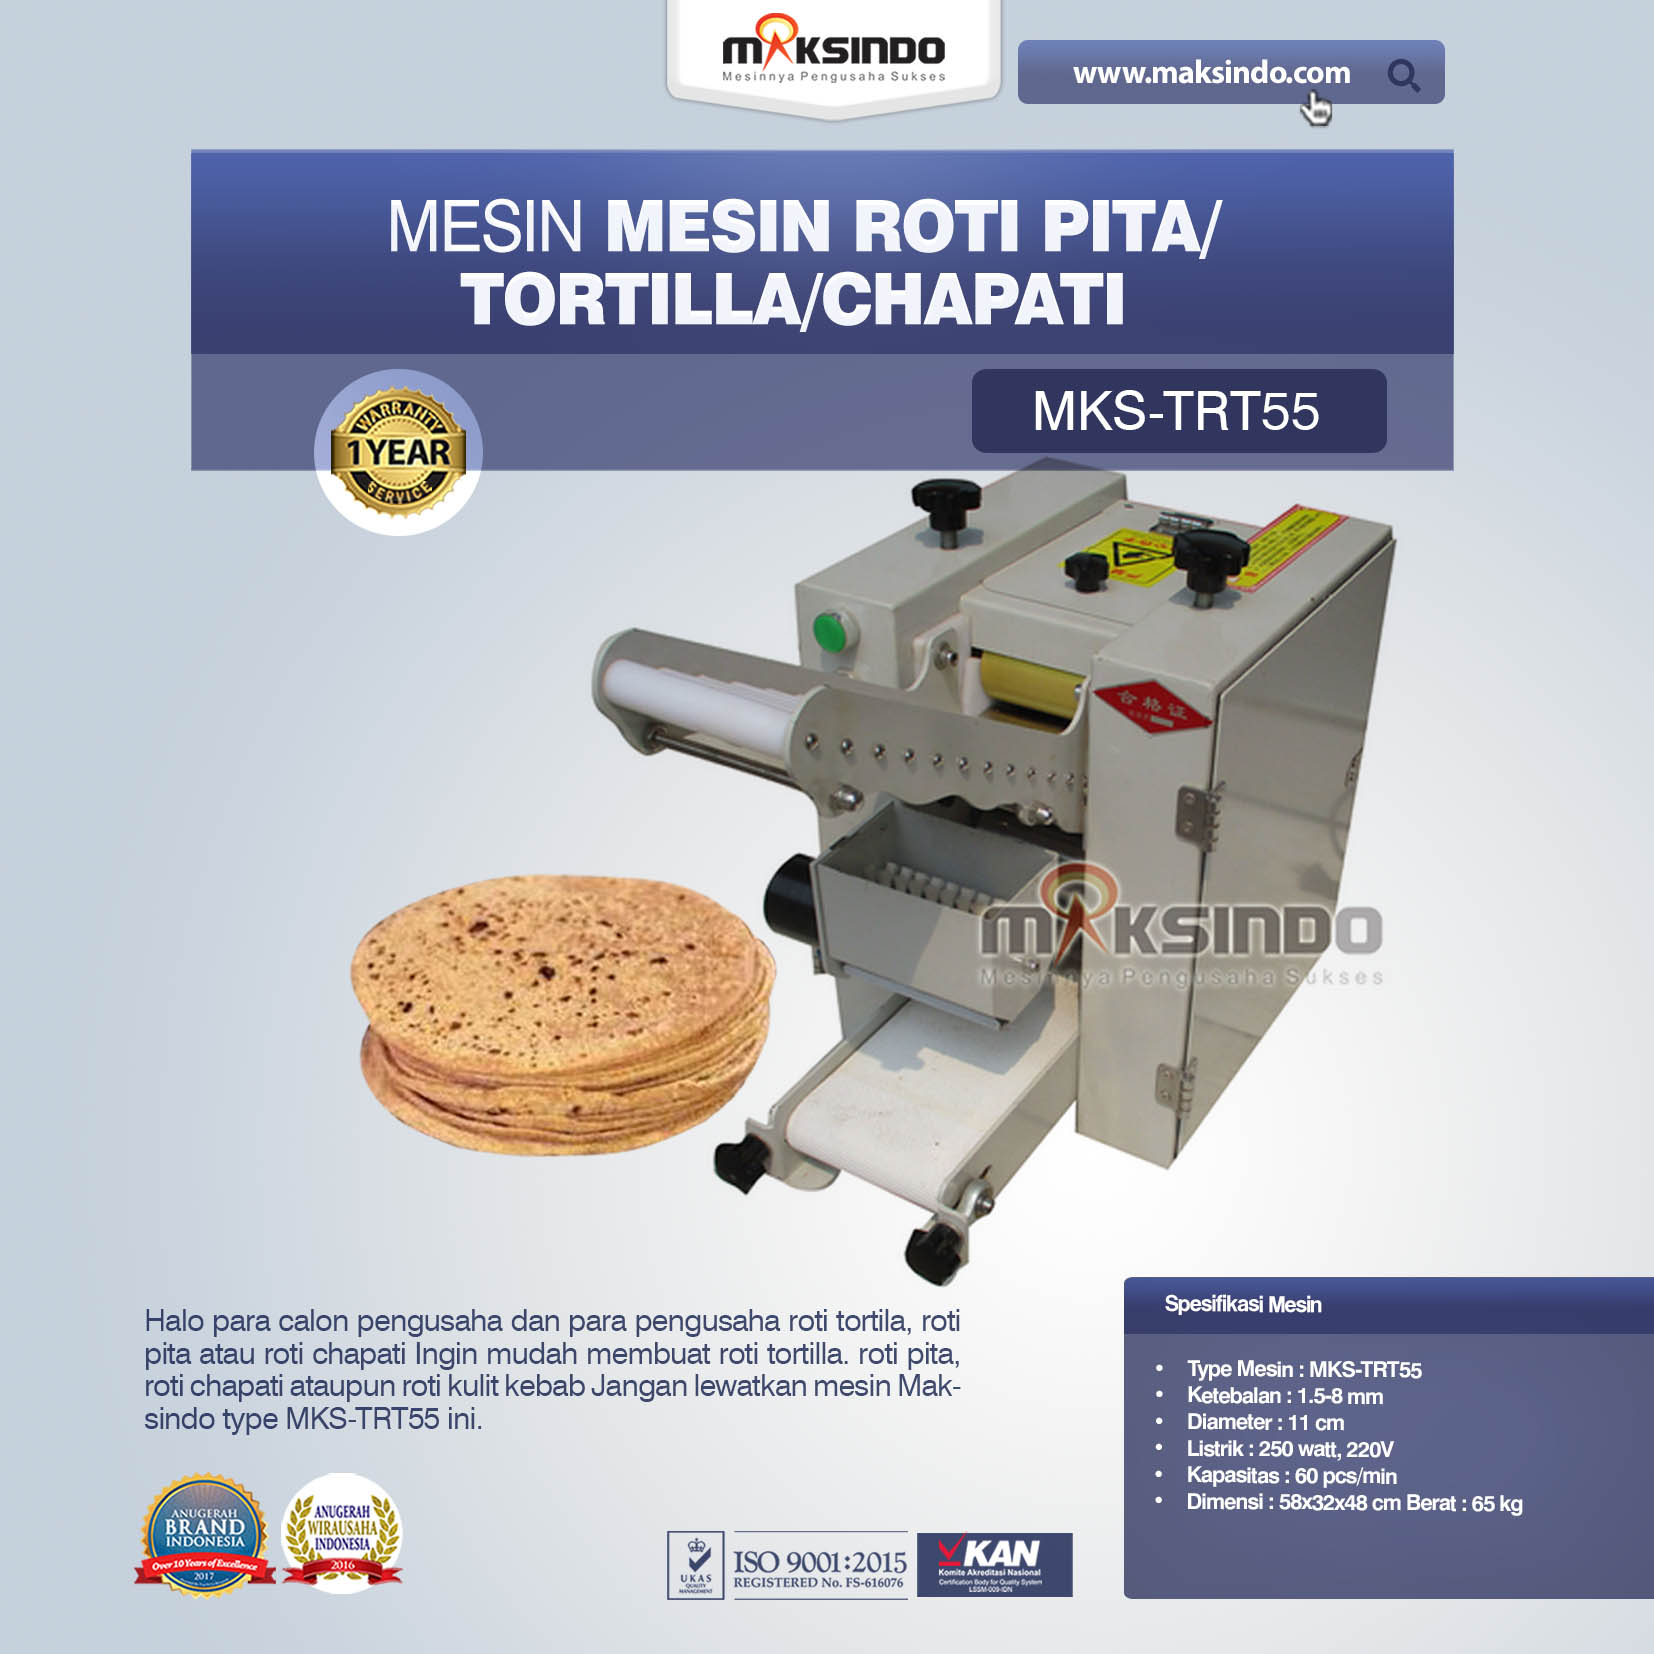 Jual Mesin Roti Pita/Tortilla/Chapati MKS-TRT55 Di Pekanbaru